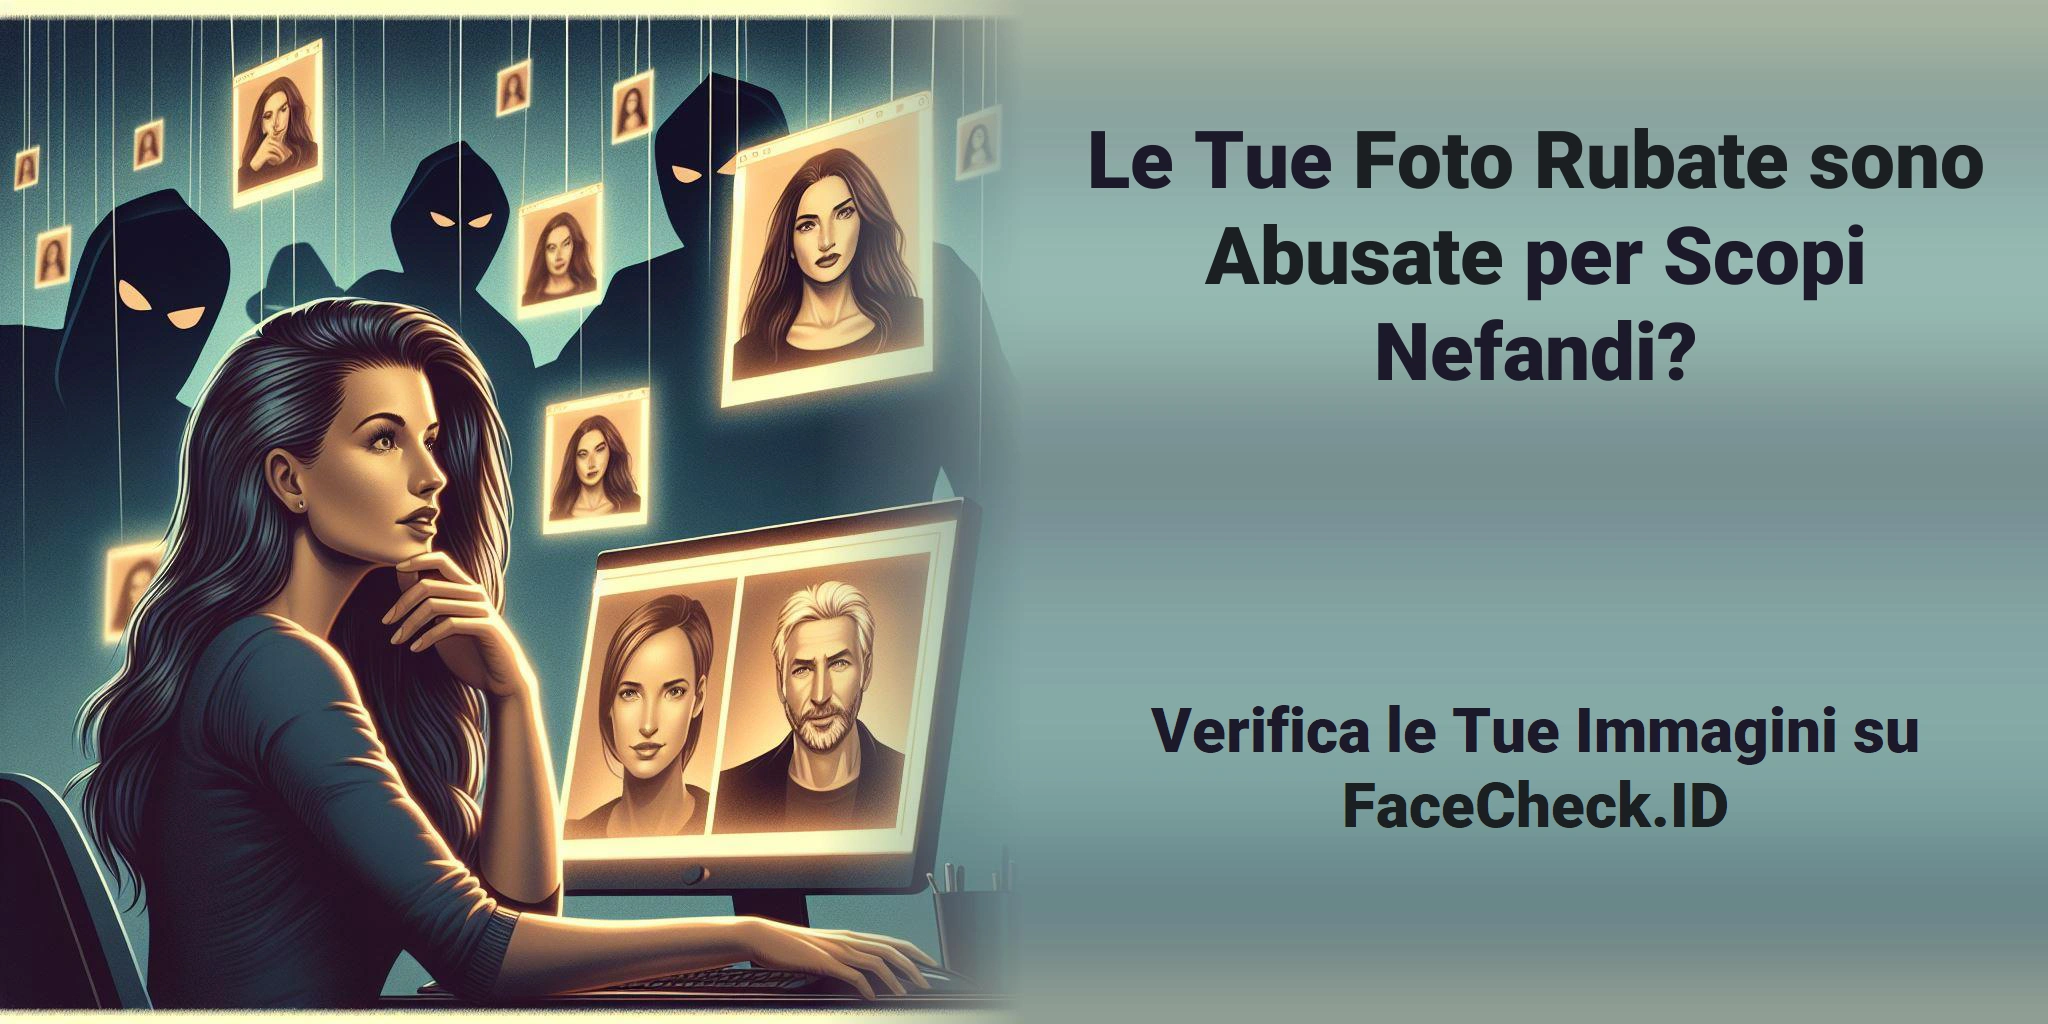 Le Tue Foto Rubate sono Abusate per Scopi Nefandi? Verifica le Tue Immagini su FaceCheck.ID